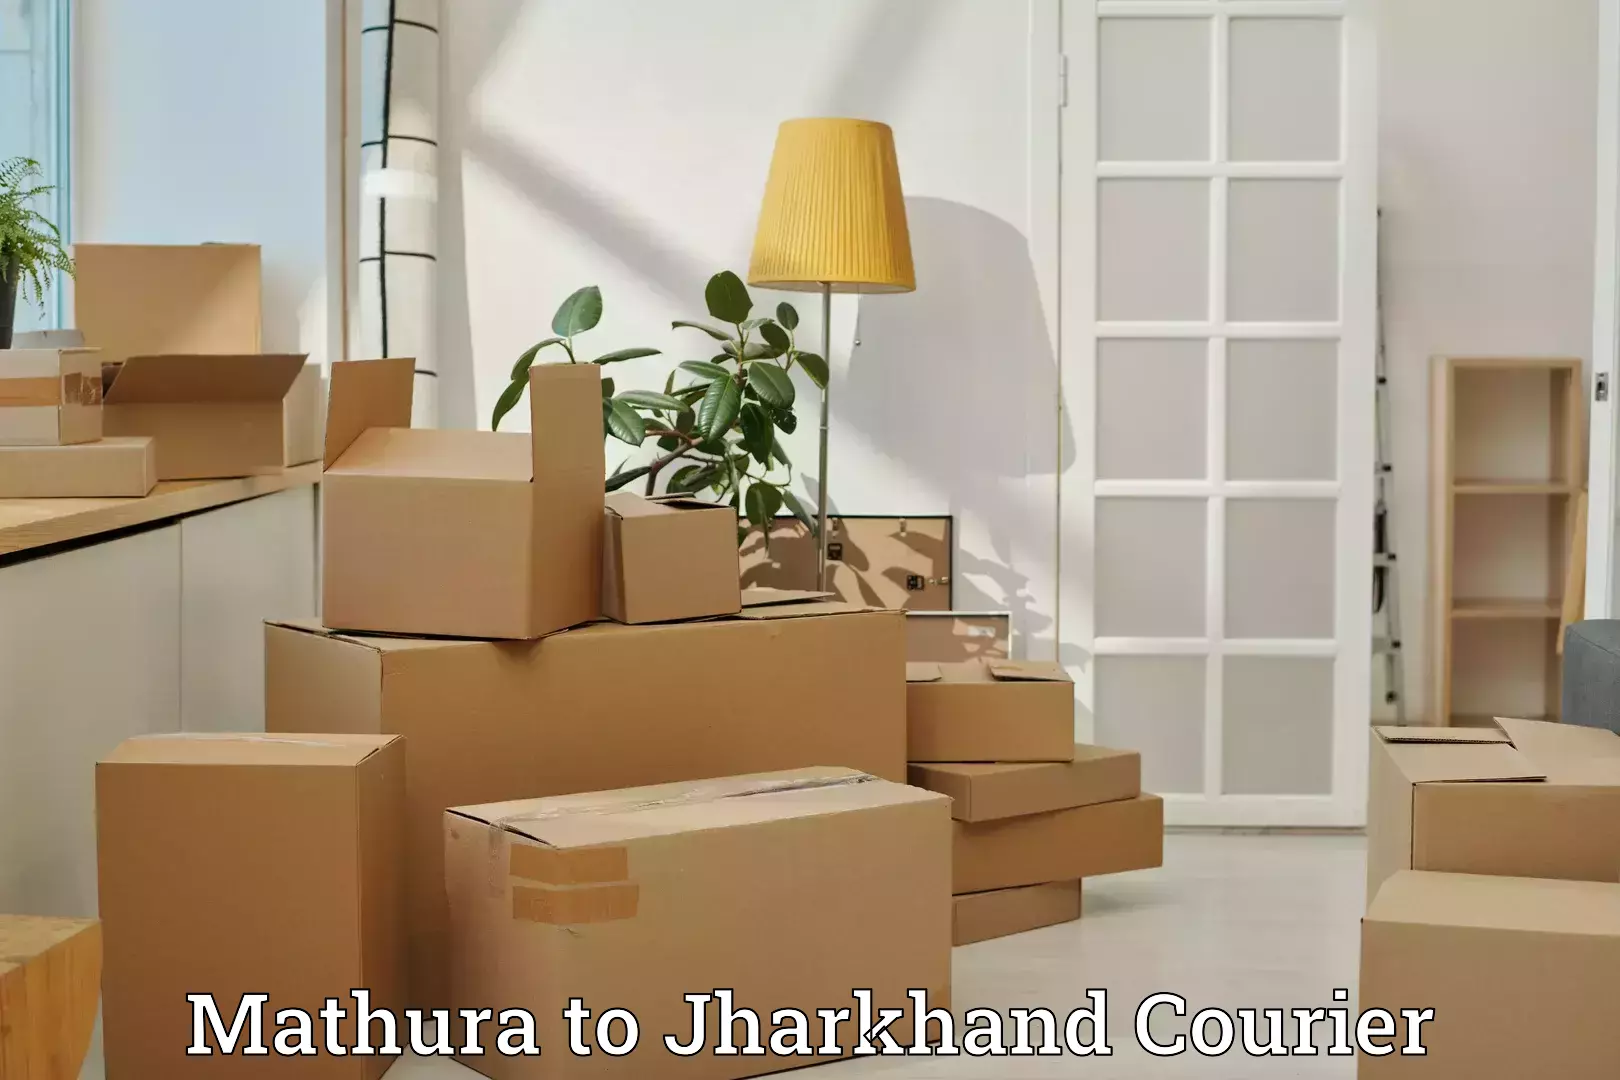 Holiday season luggage delivery Mathura to Kedla